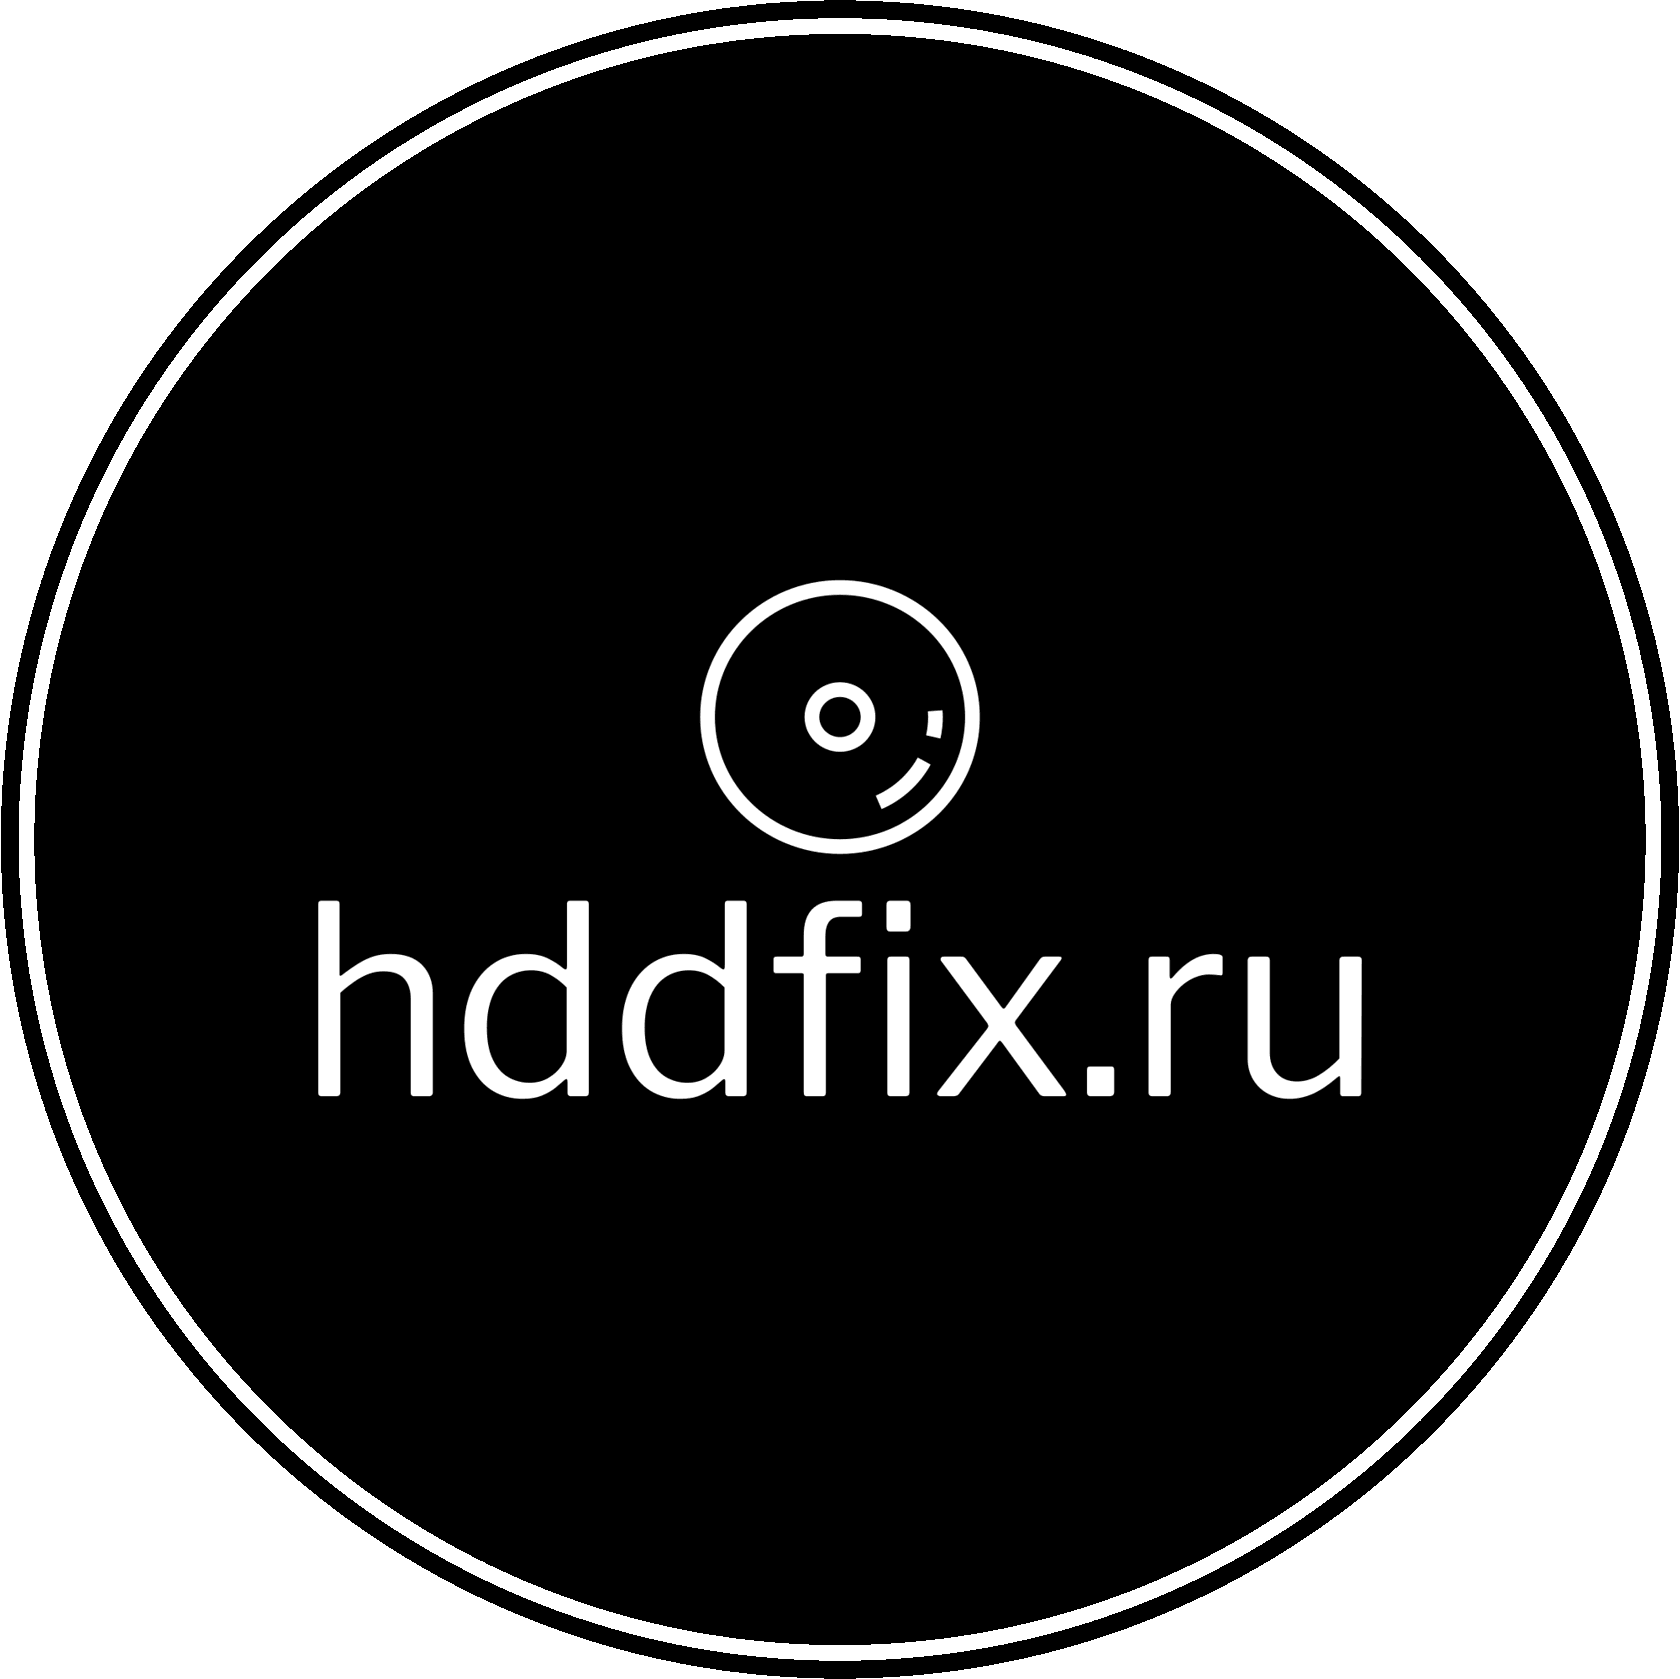 HDDFIX.RU